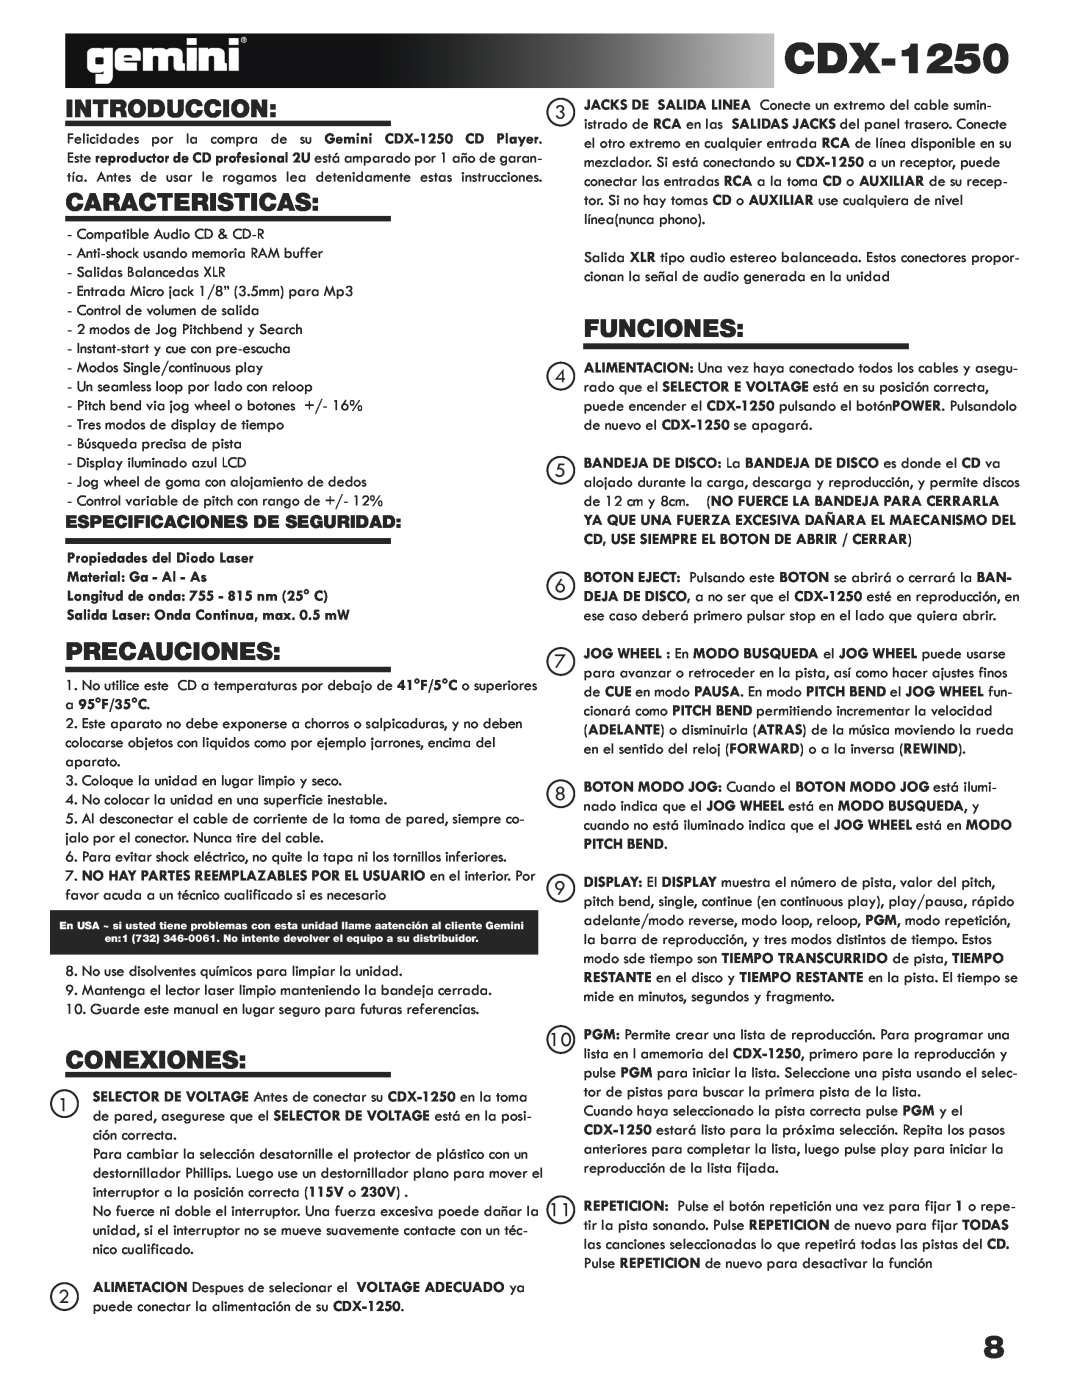 Gemini CDX-1250 manual Introduccion, Caracteristicas, Funciones, Precauciones, Conexiones, Especificaciones De Seguridad 